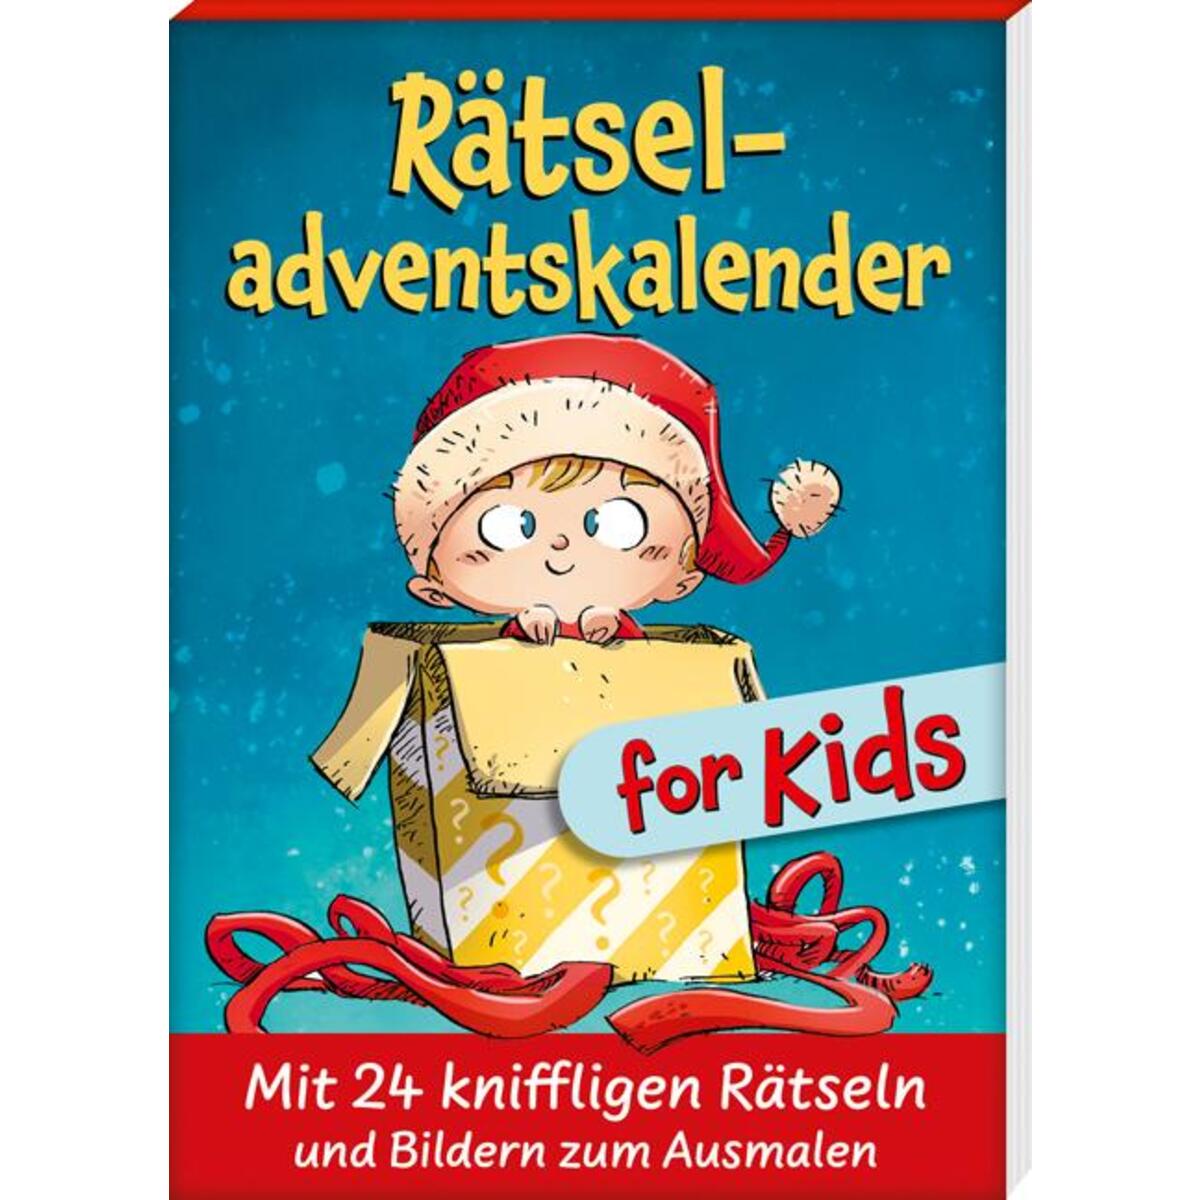 Rätseladventskalender for Kids 3 von Kaufmann Ernst Vlg GmbH